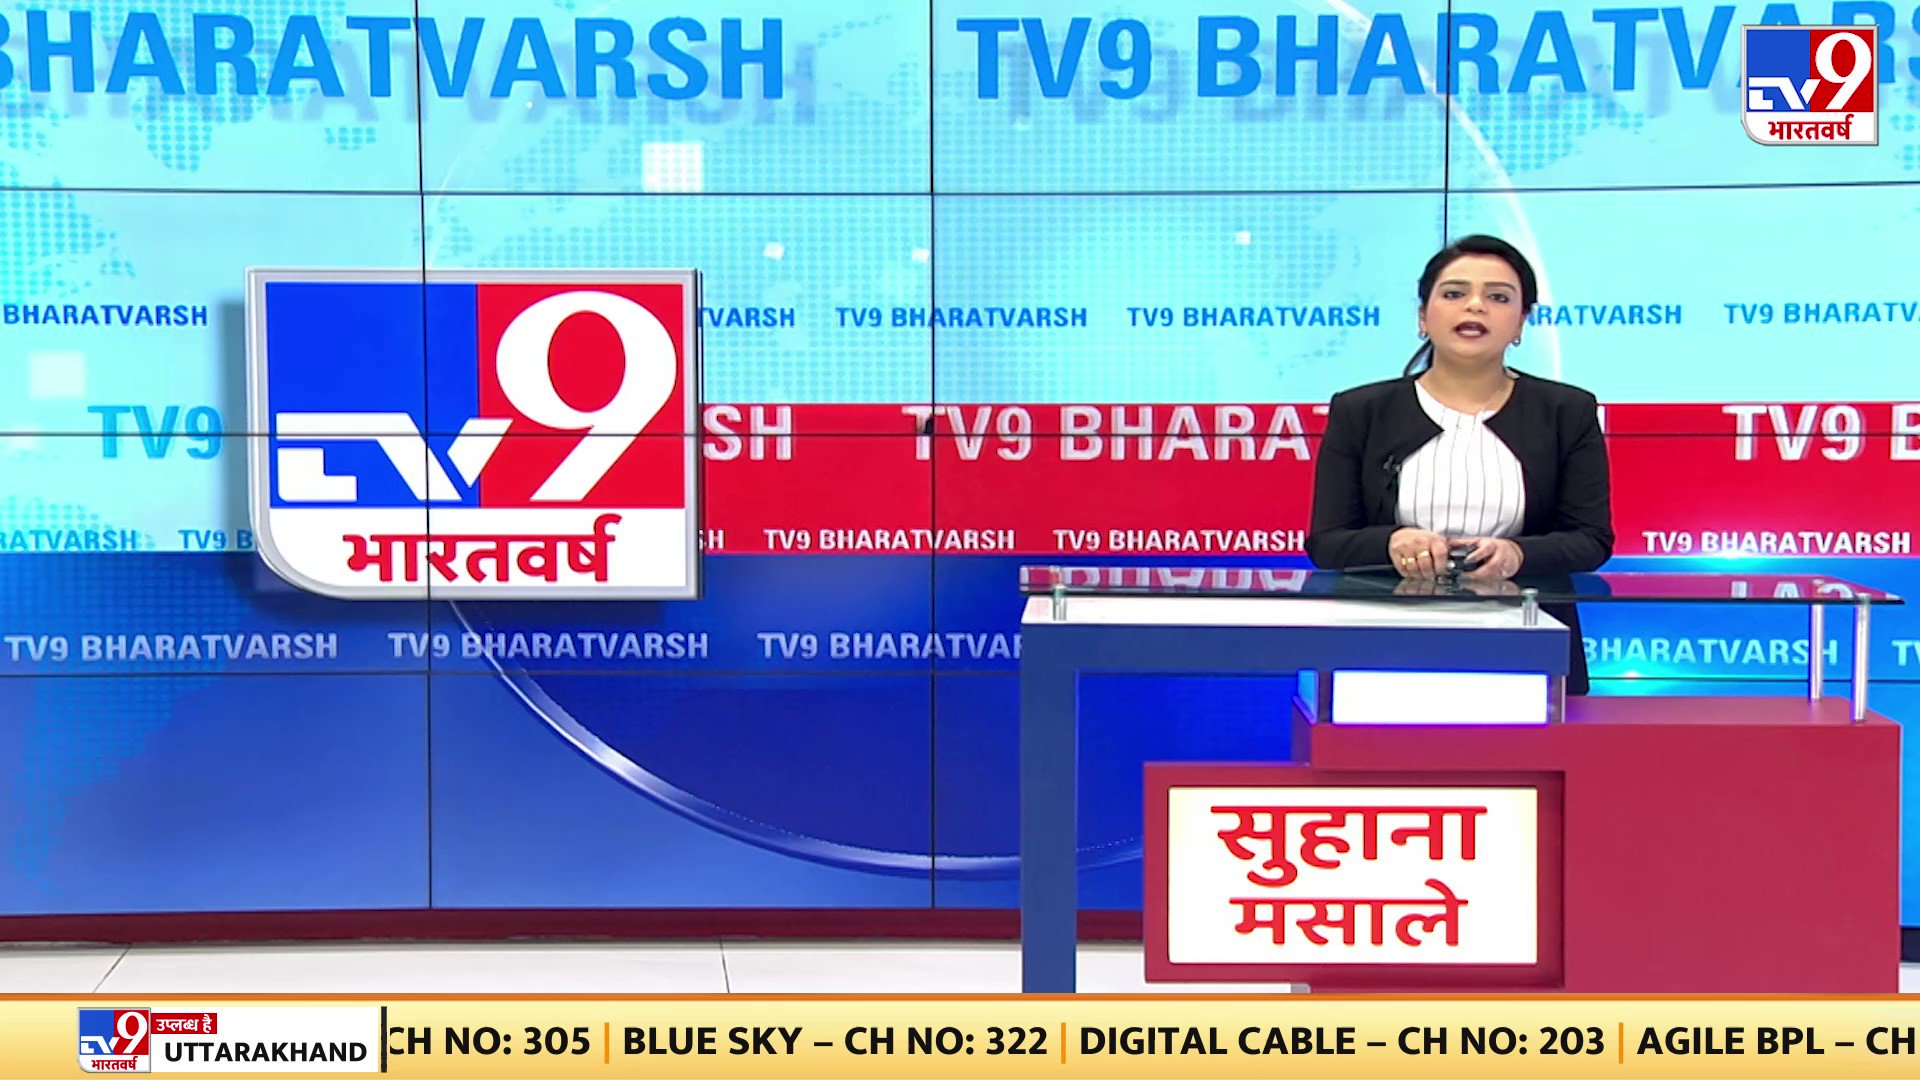 TV9 Telugu on Twitter Minister Botsa Satyanarayana counter to Chiranjeevi   TV9 BotsaSatyanarayana Chiranjeevi TV9Telugu httpstco5HzFrhHjzu   X